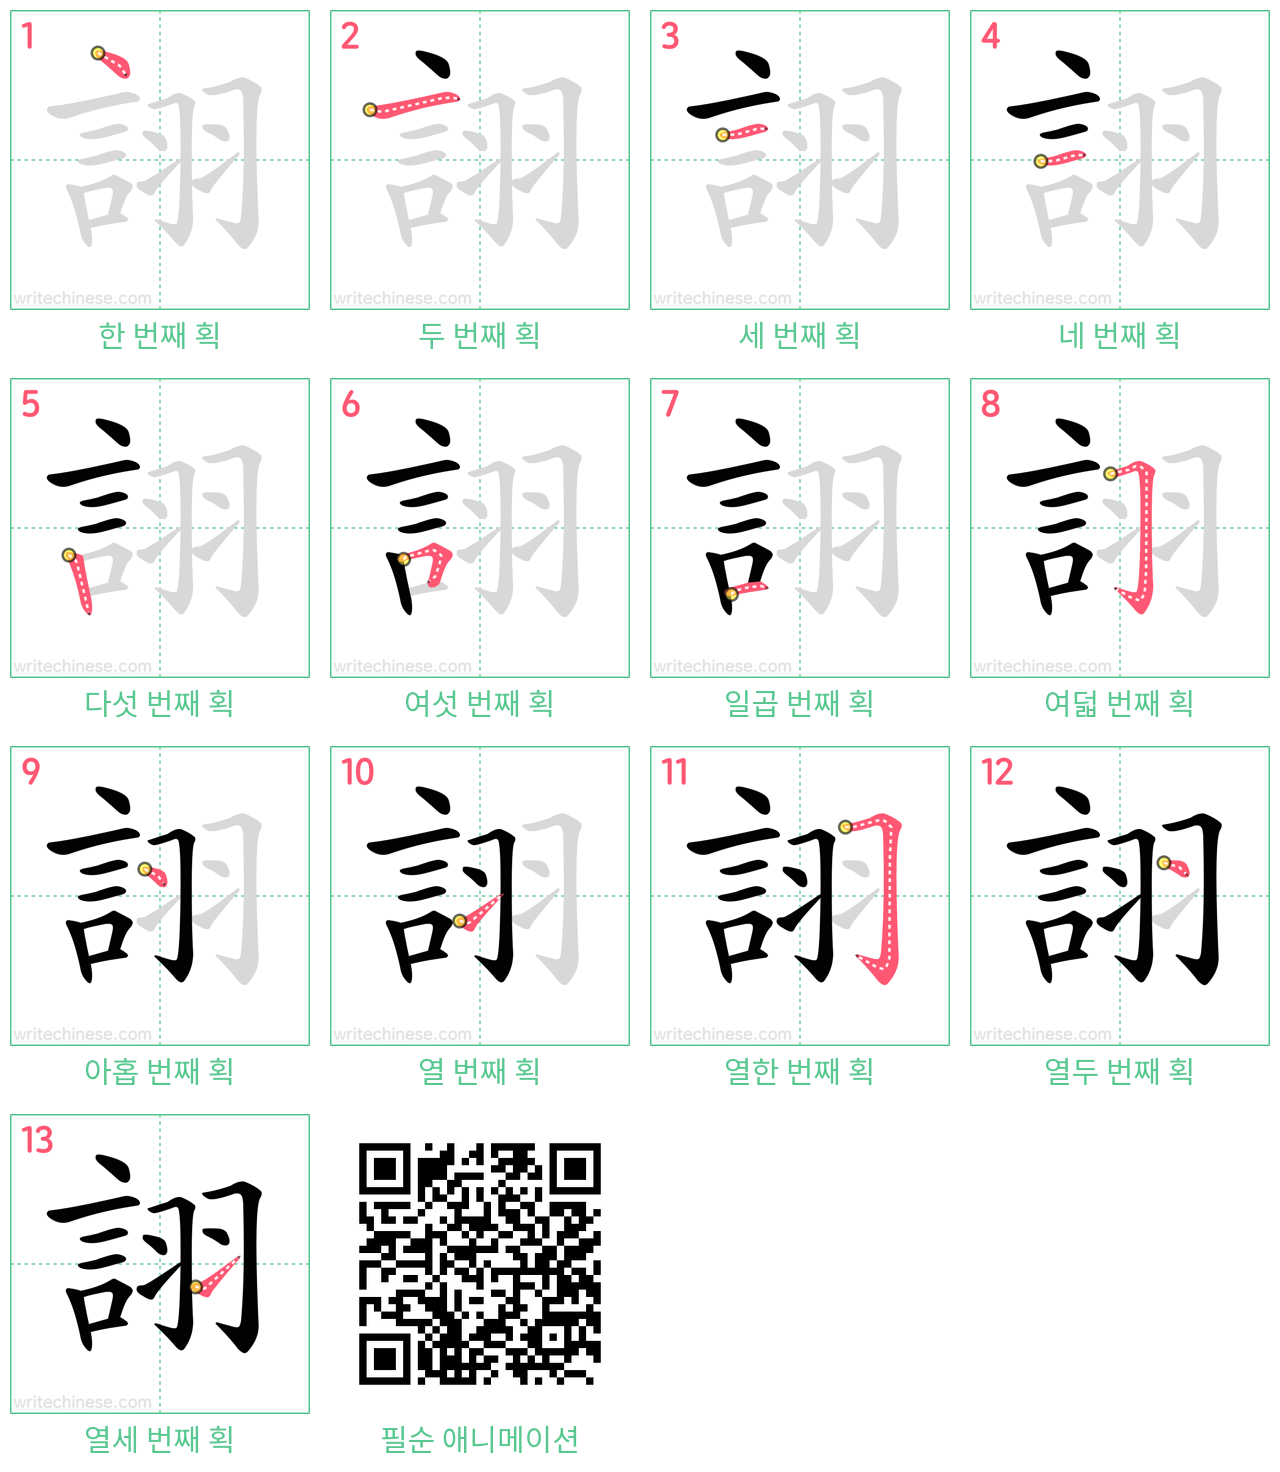 詡 step-by-step stroke order diagrams